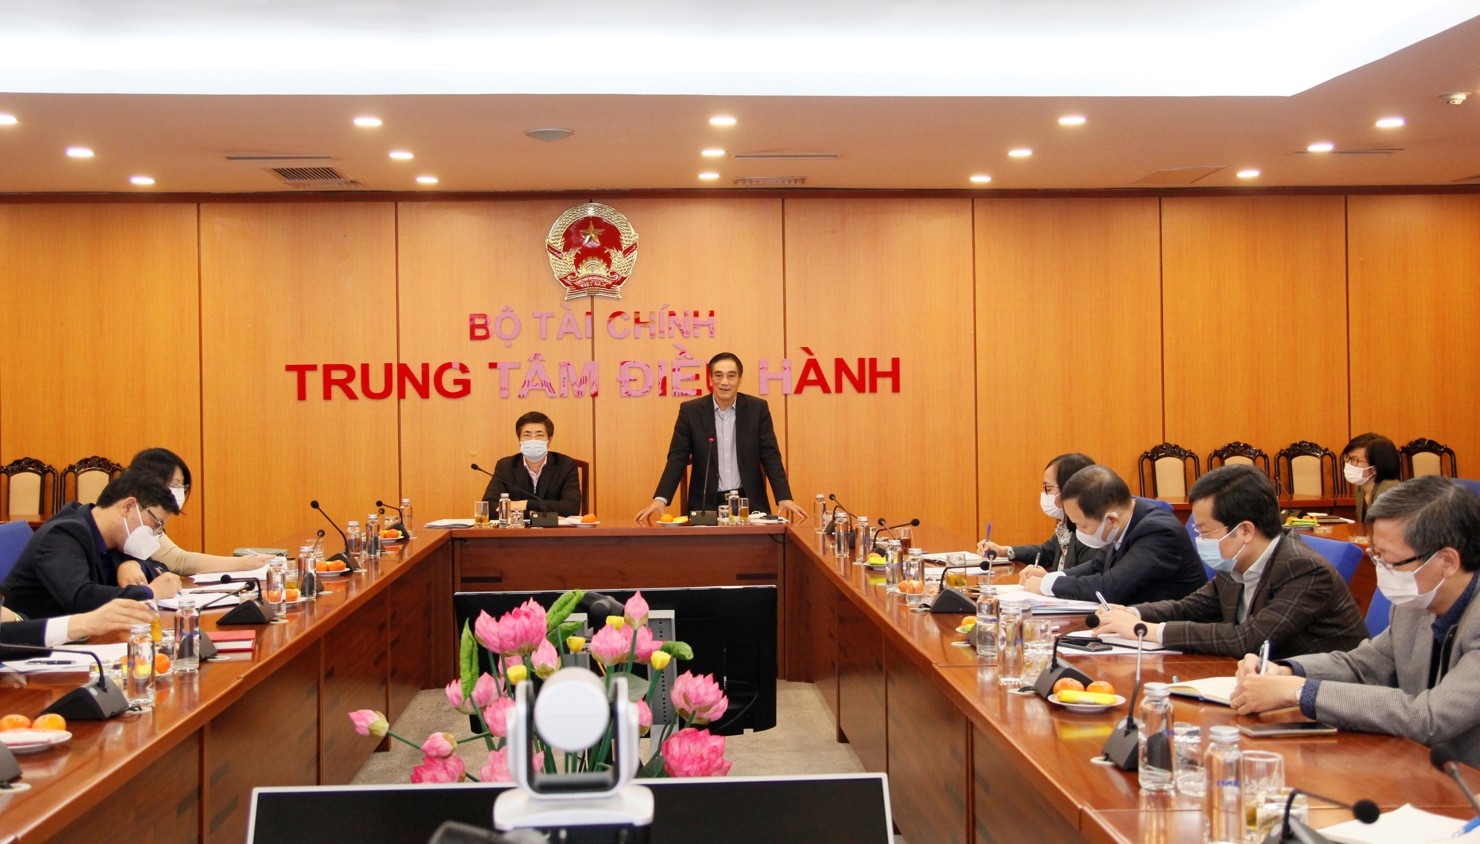 Thứ trưởng Bộ Tài chính Trần Xuân Hà dự và chỉ đạo hội nghị.